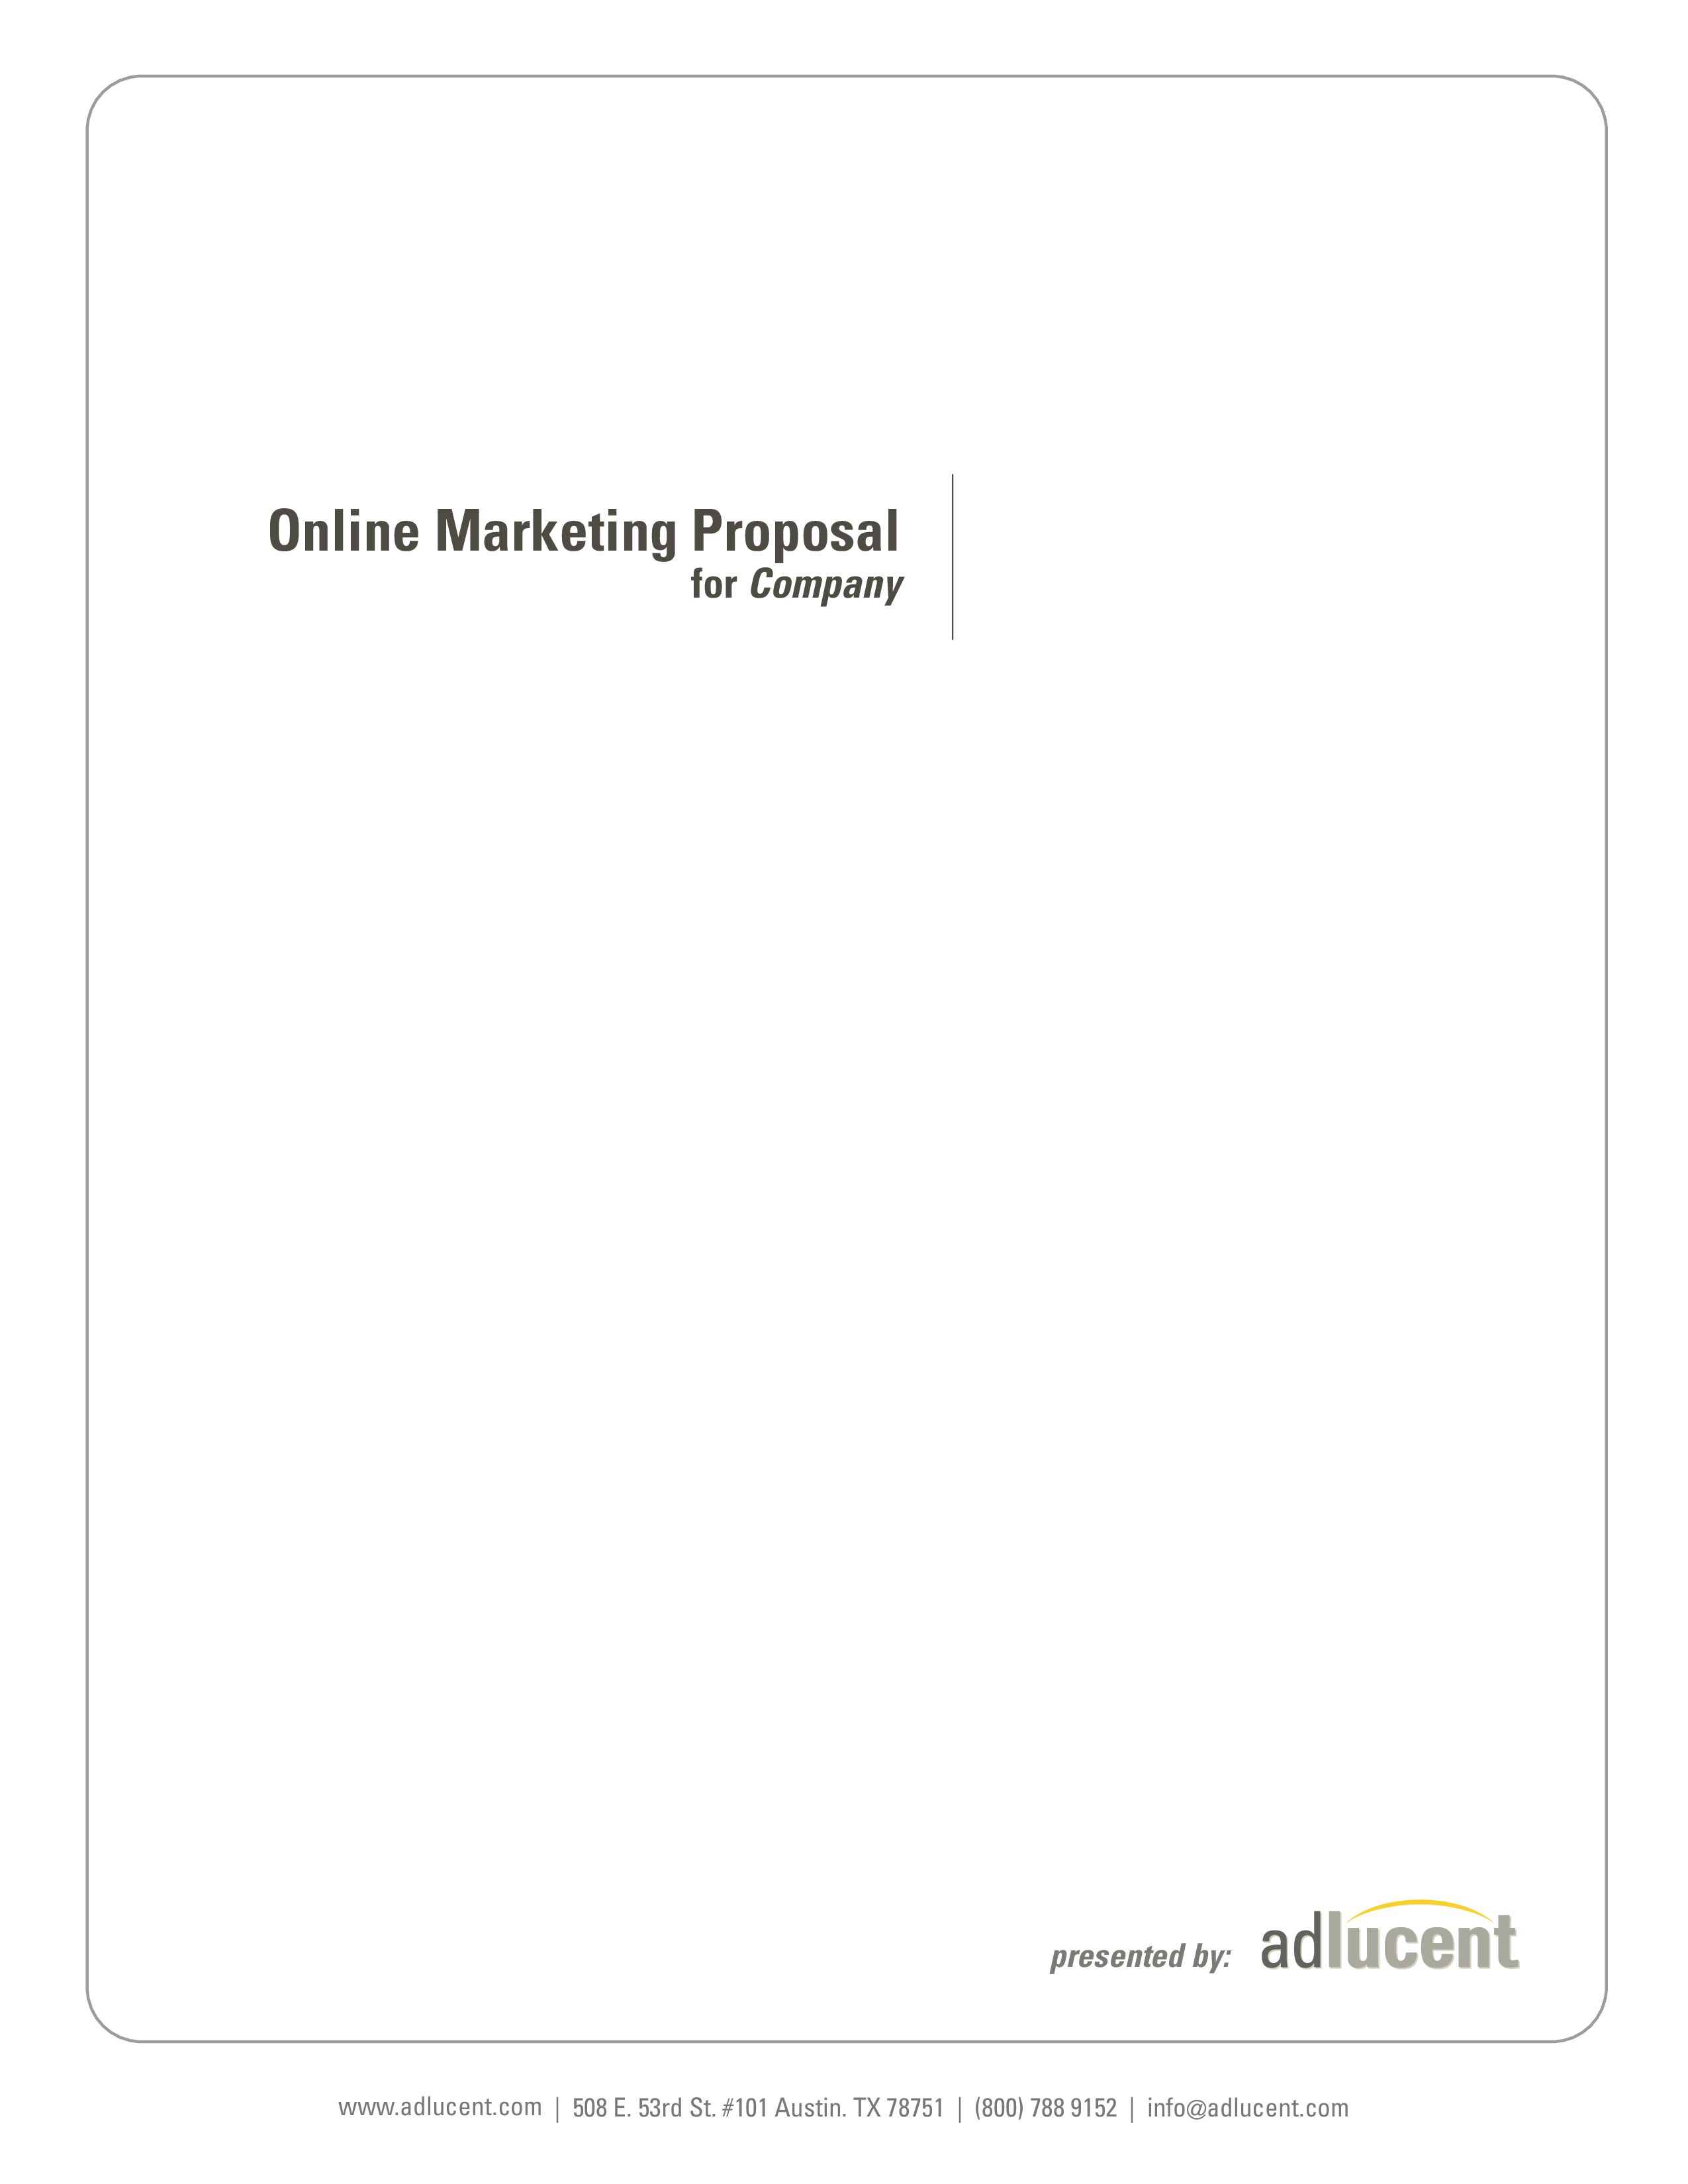 online marketing proposal plantilla imagen principal